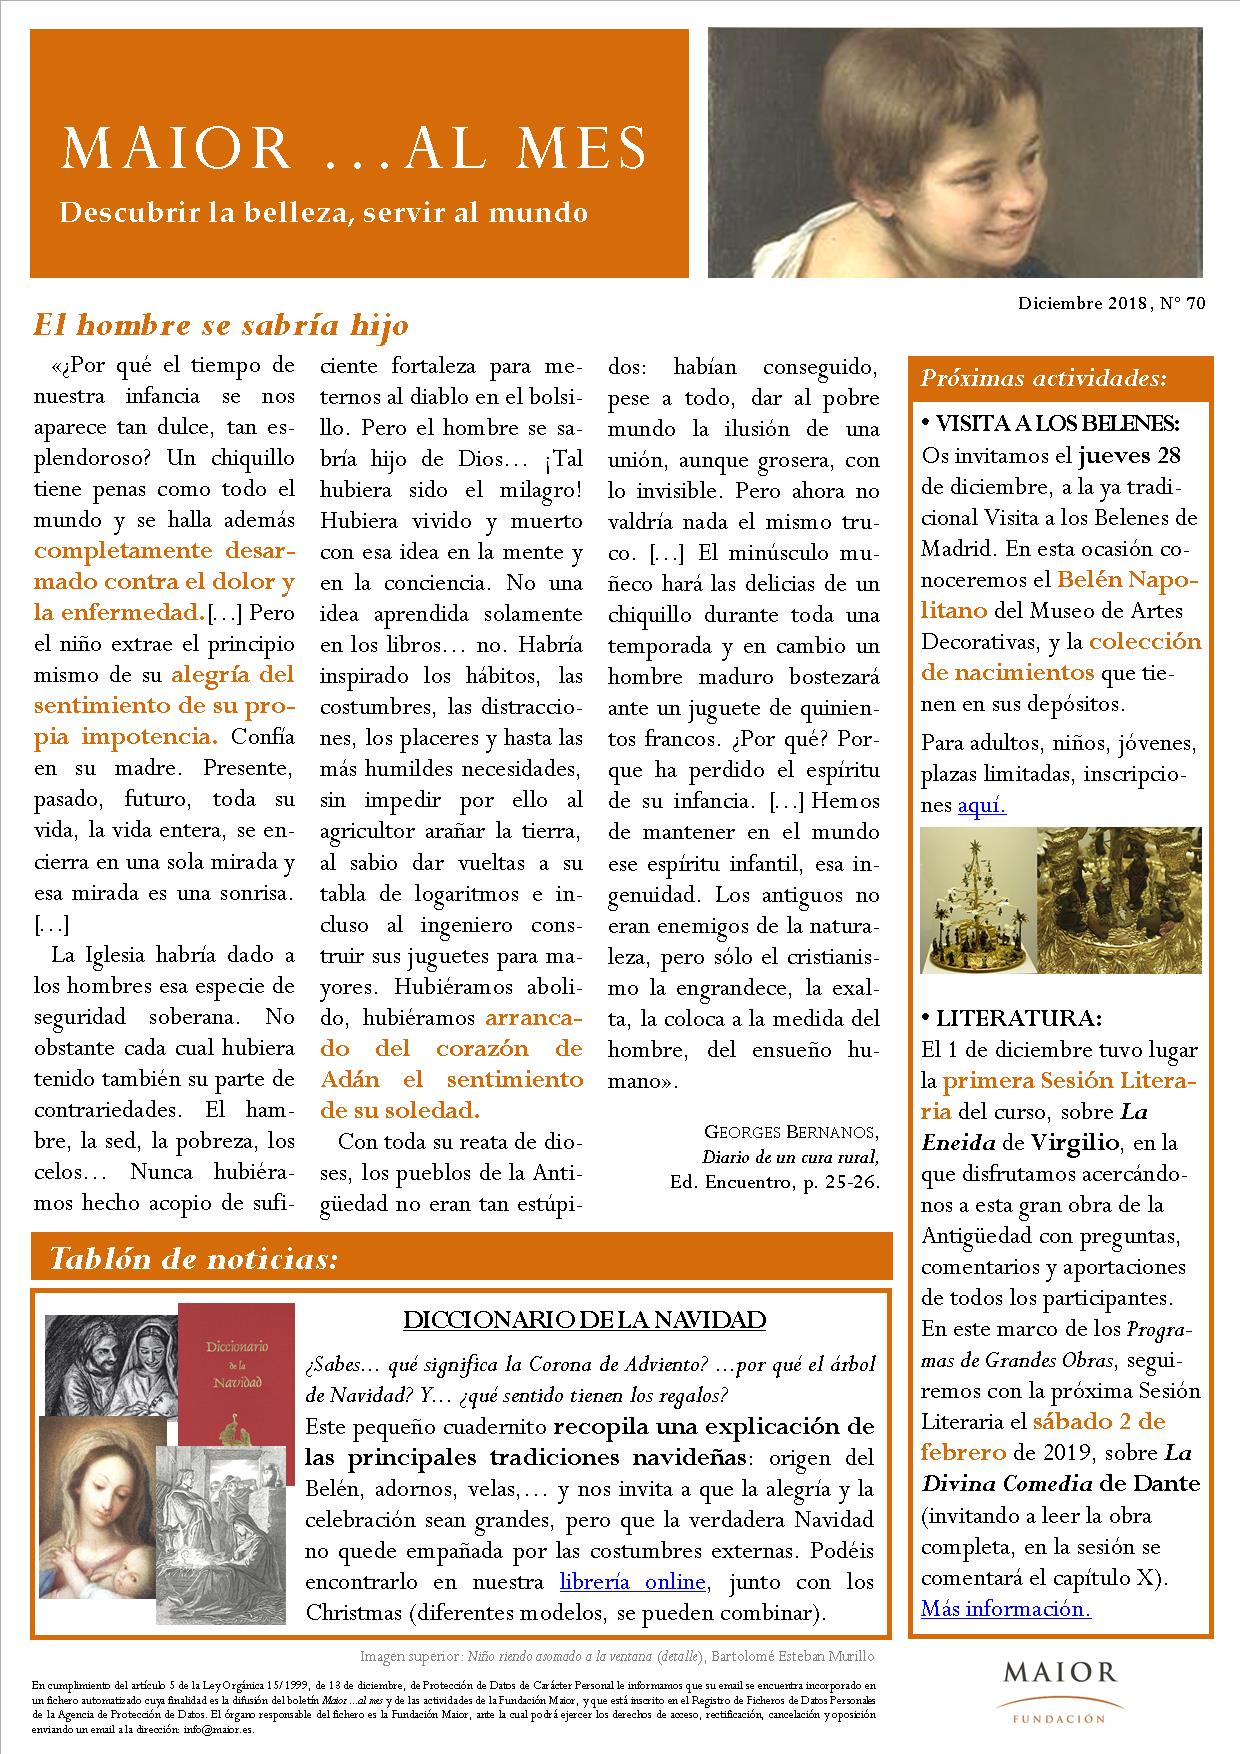 Boletín mensual de noticias y actividades de la Fundación Maior. Edición de diciembre 2018